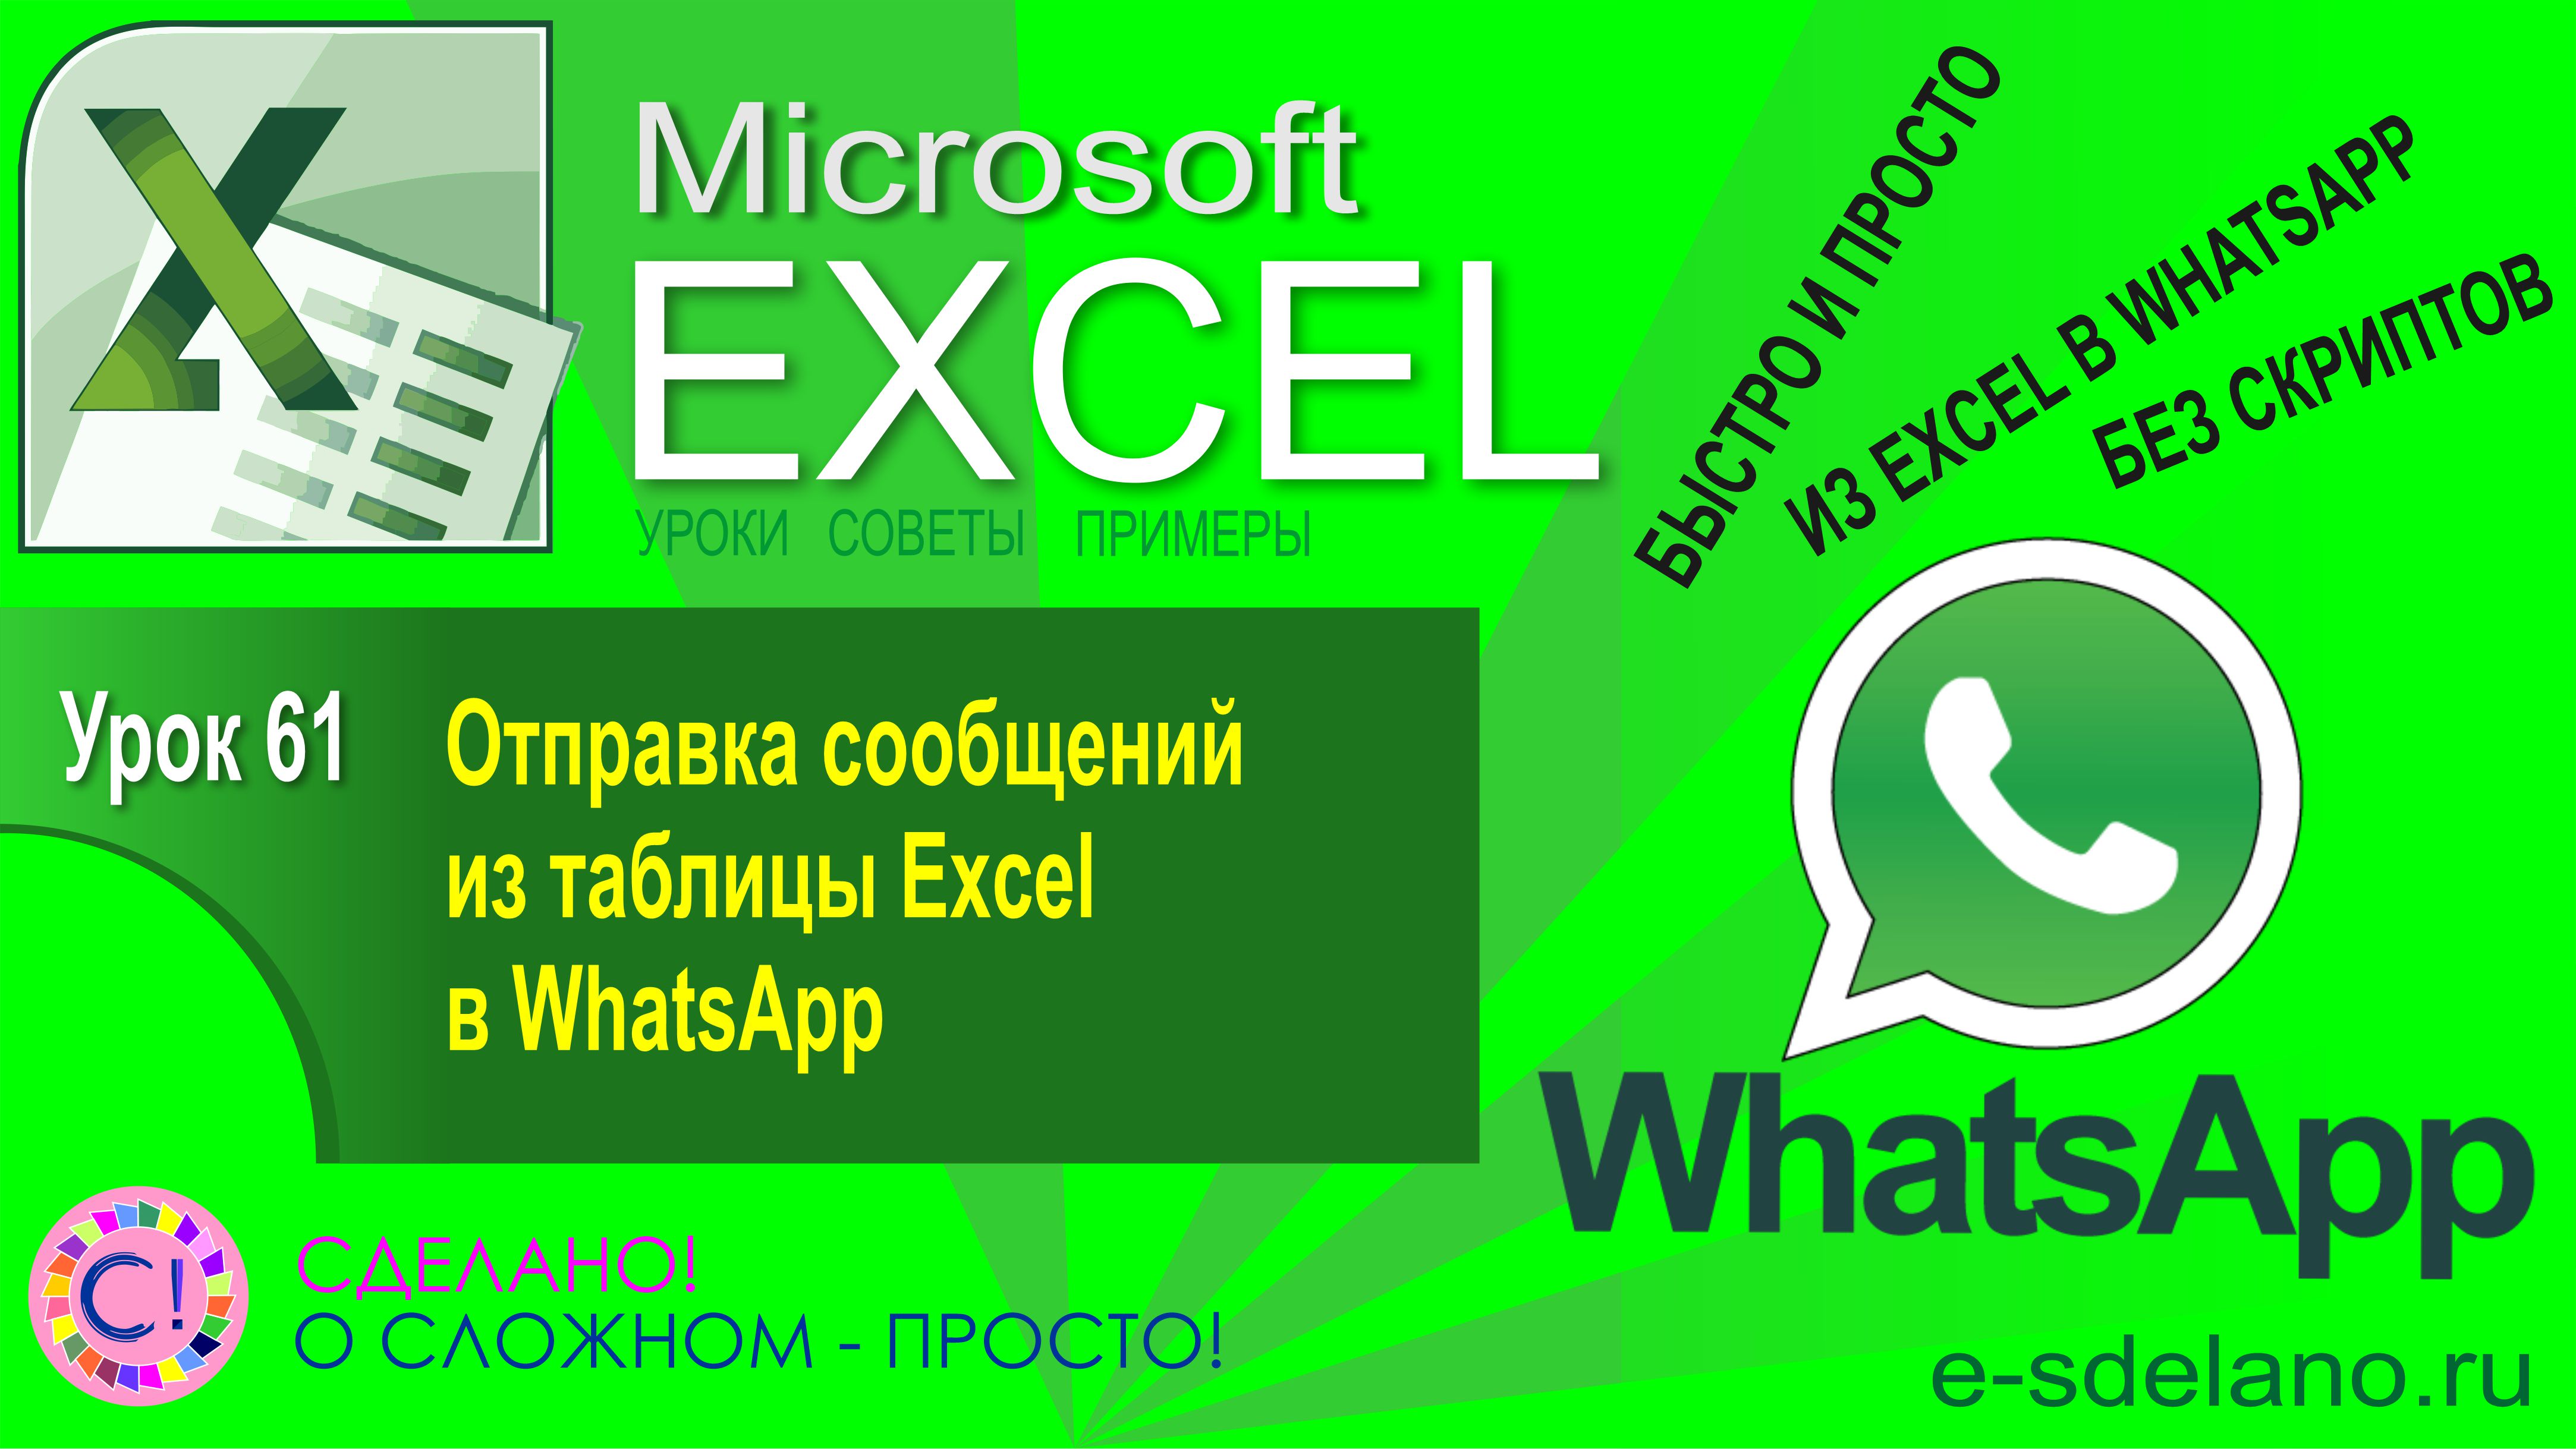 Excel. Урок 61. Как отправить сообщение в WhatsApp из Excel